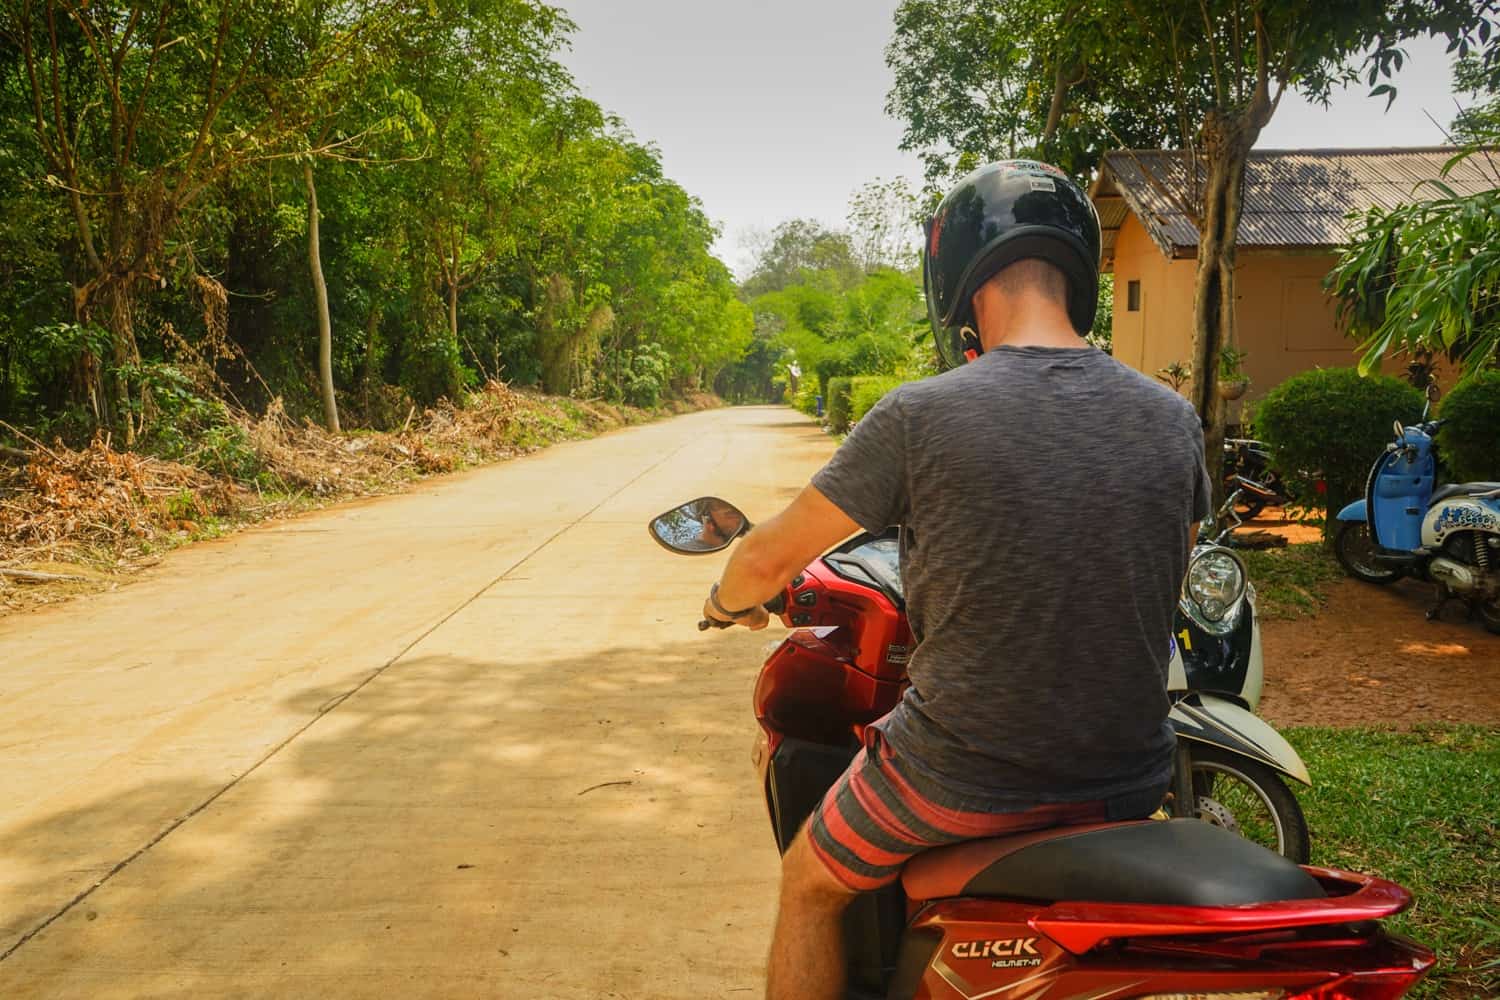 Man on motorbike in Thailand